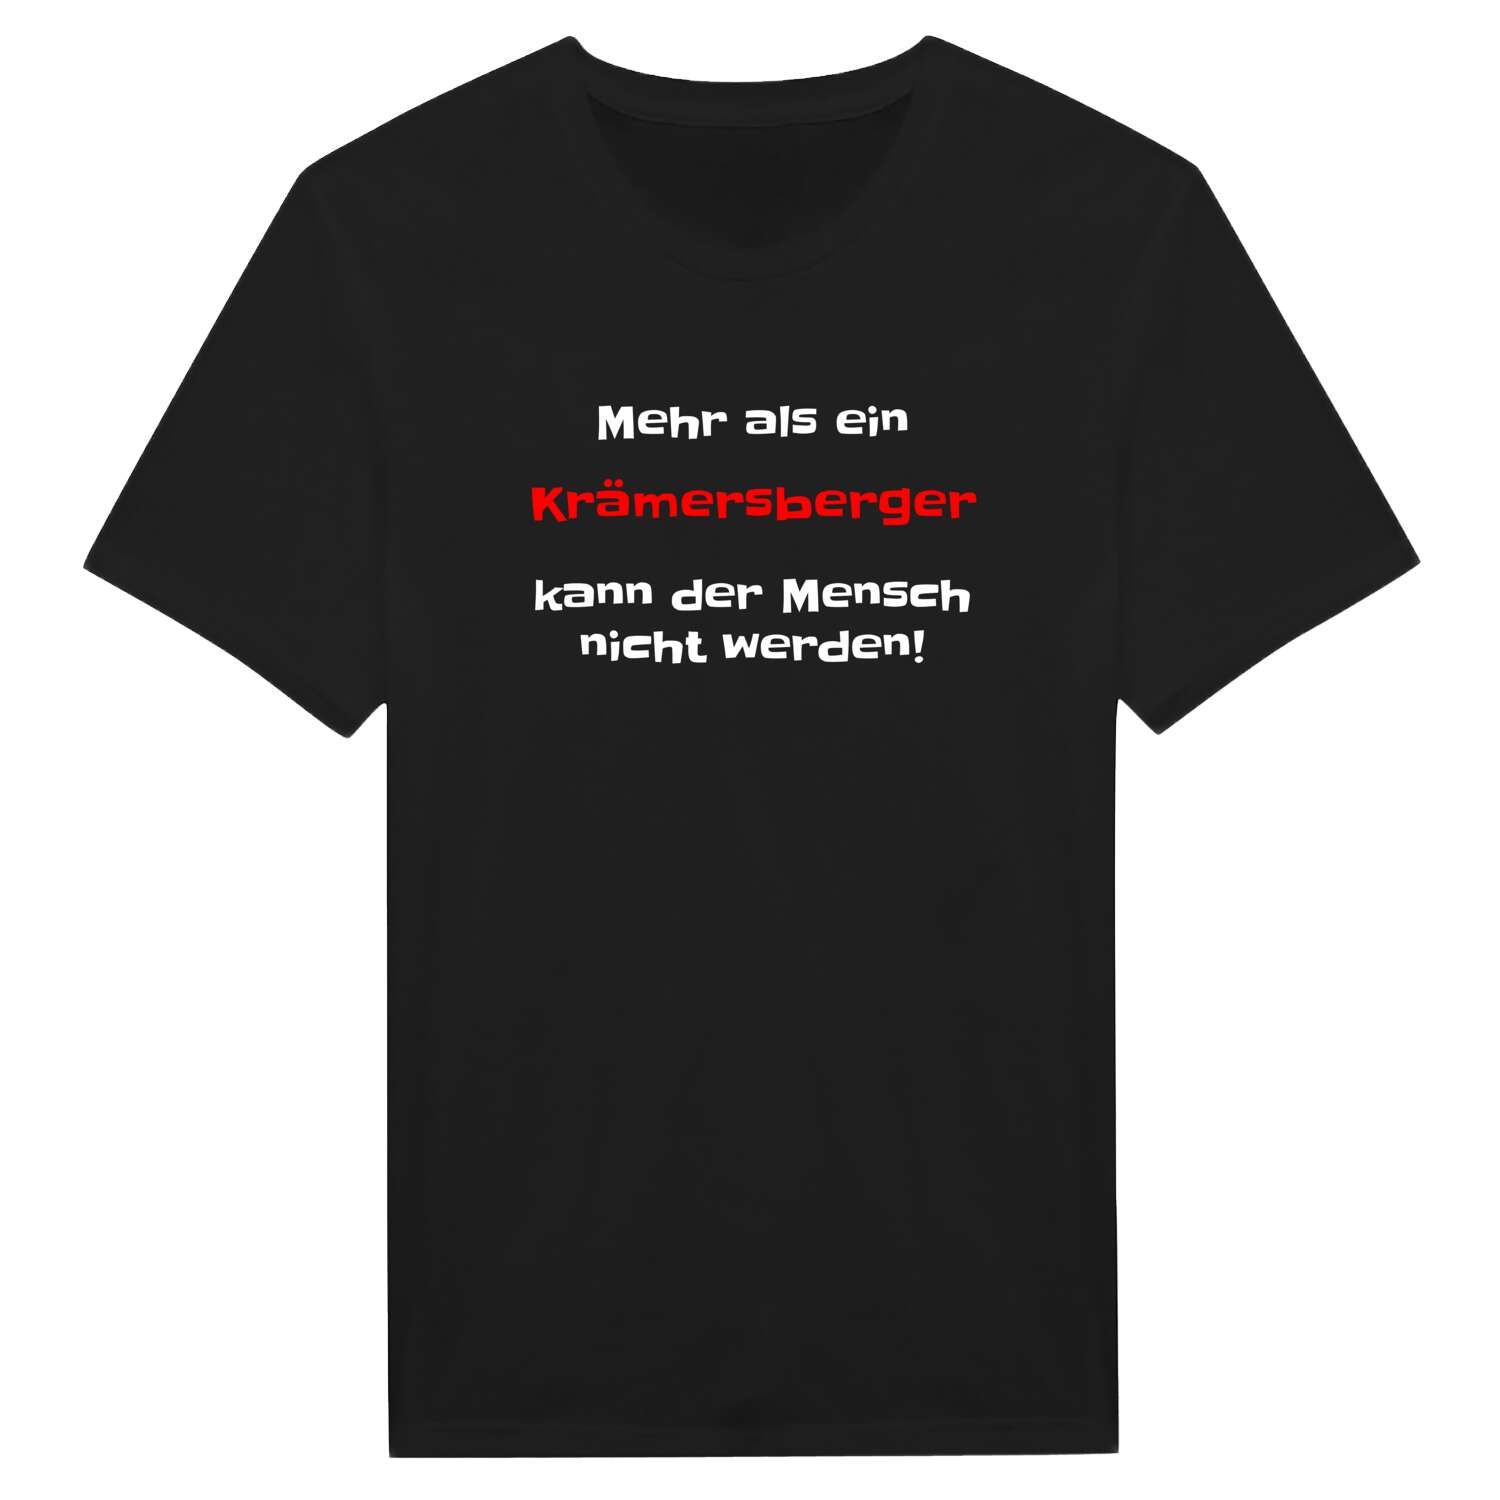 Krämersberg T-Shirt »Mehr als ein«